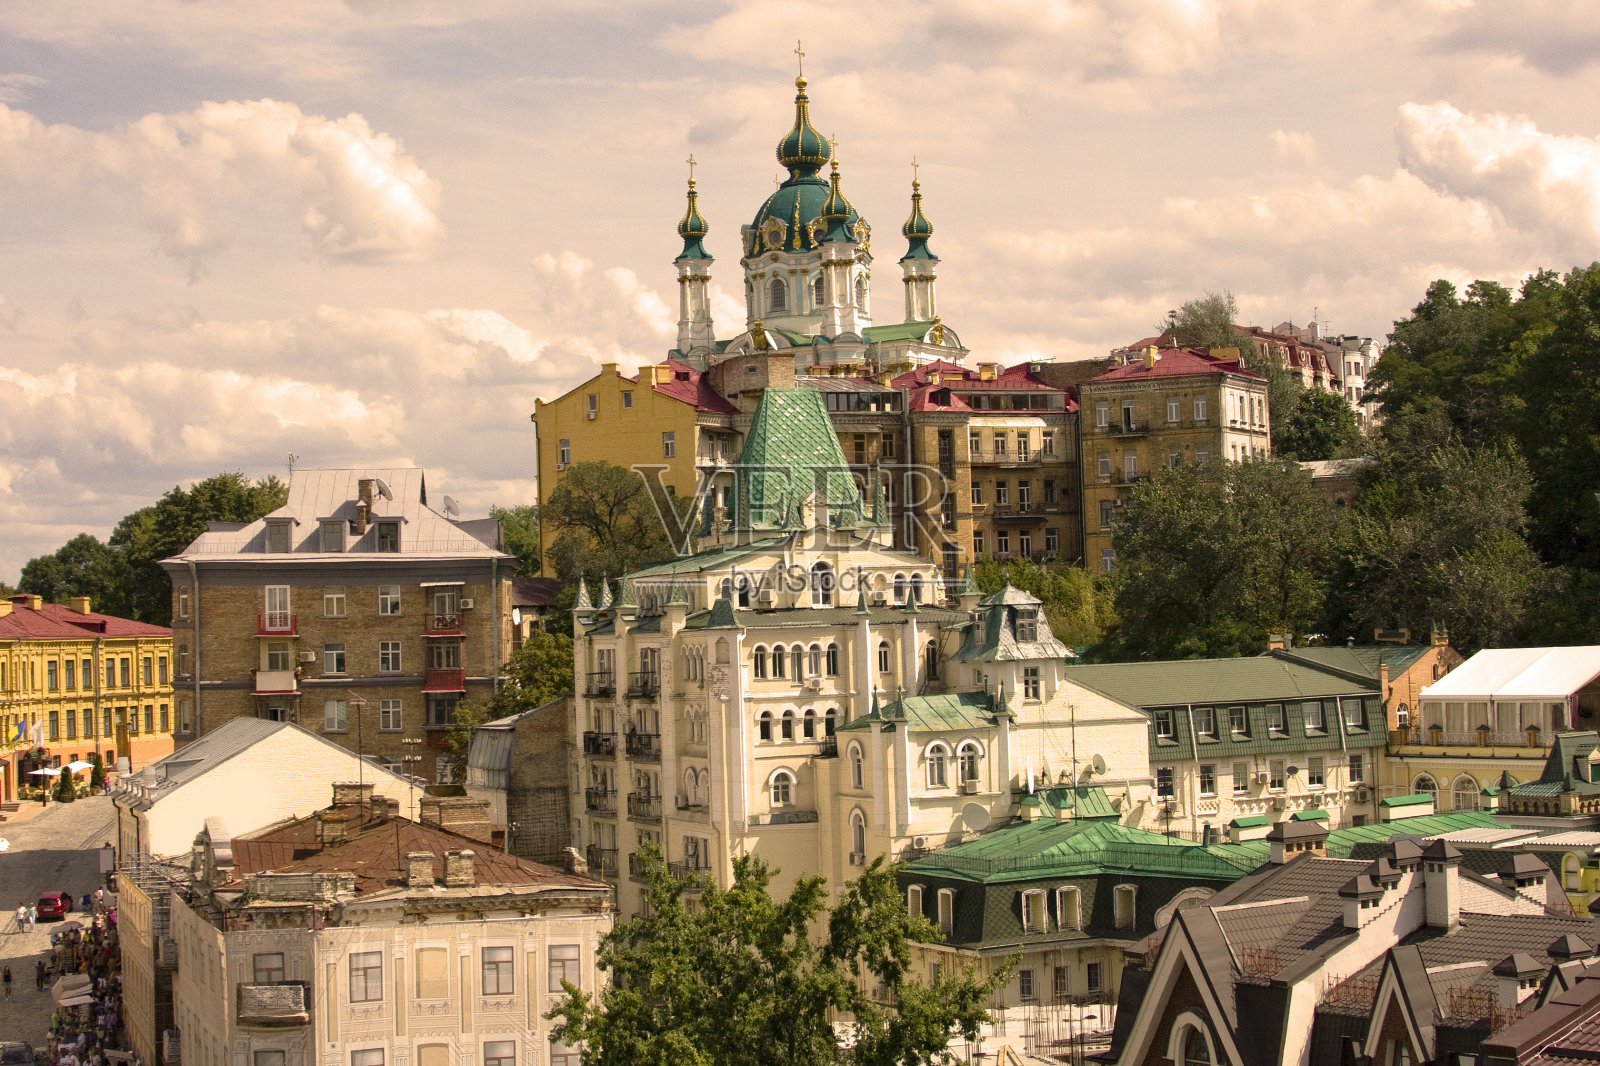 乌克兰基辅壁纸背景。圣安德鲁大教堂照片摄影图片